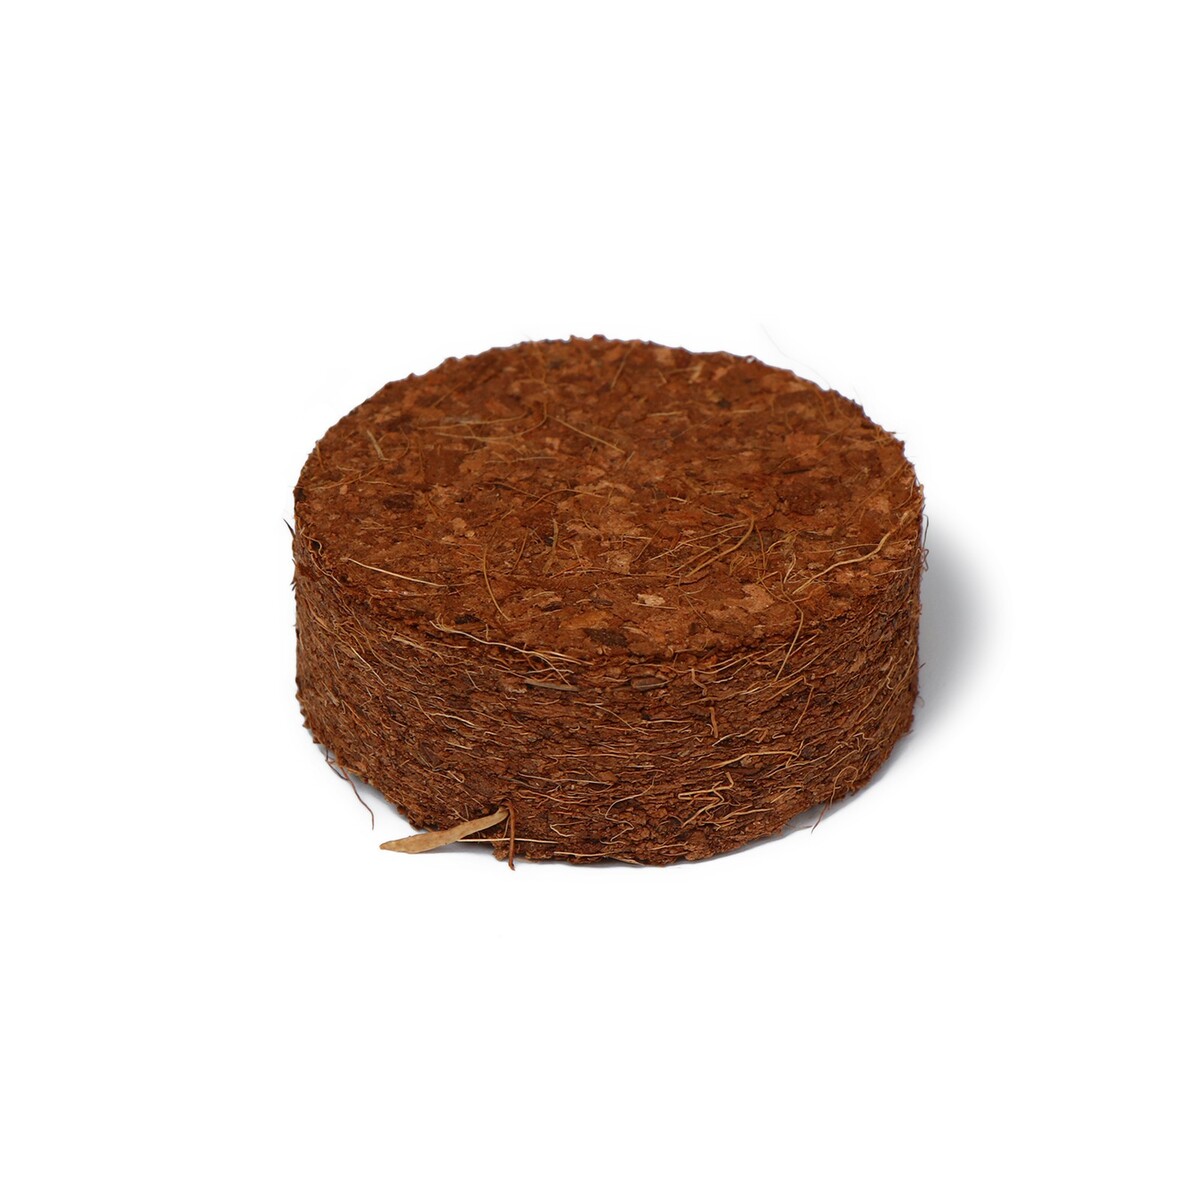 фото Таблетки кокосовые, d = 4 см, без оболочки, набор 10 шт., greengo